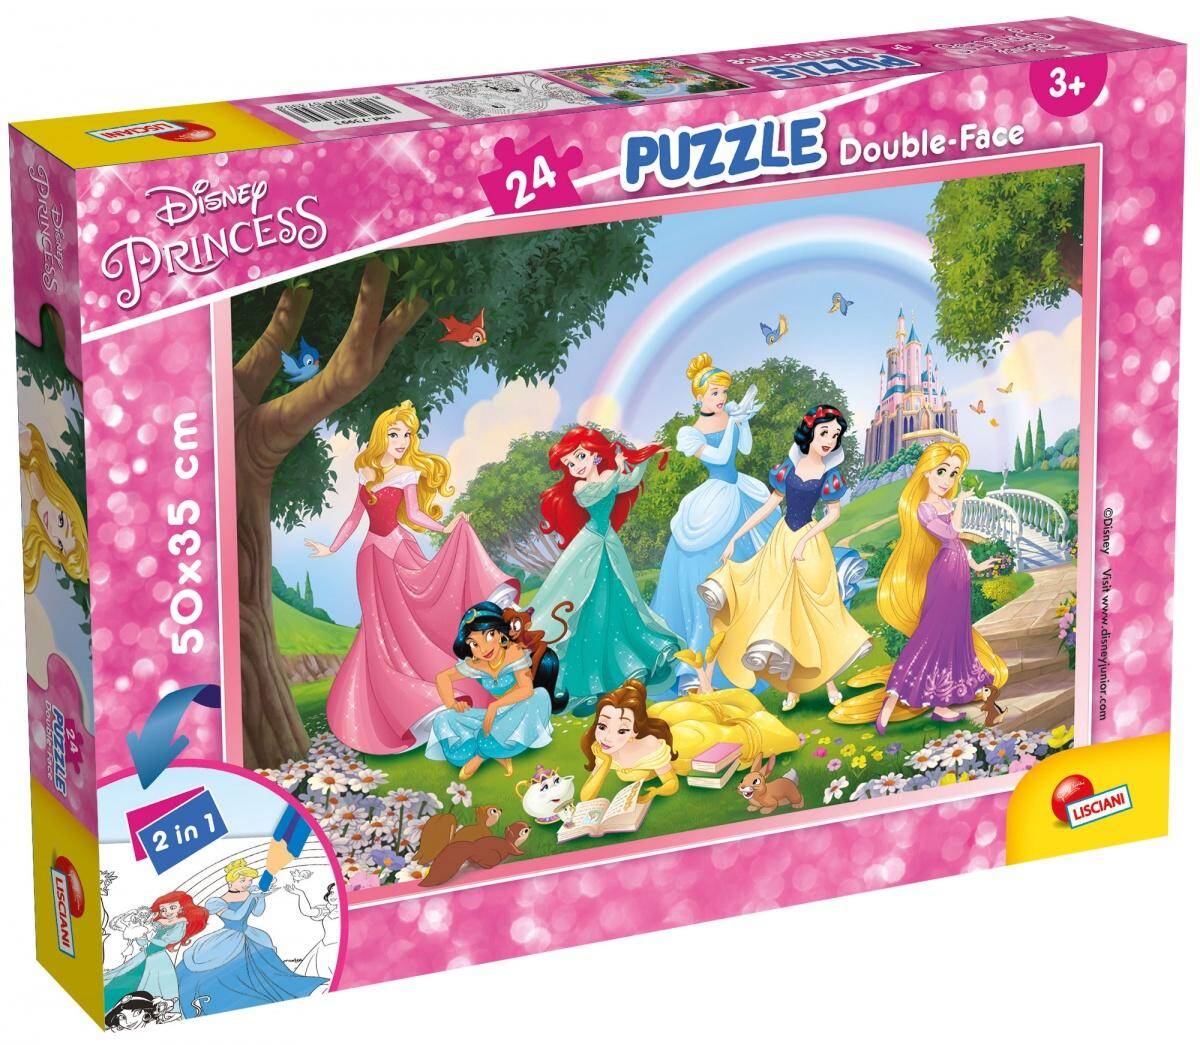 Puzzle 24 plus double-face Princess 304-73993